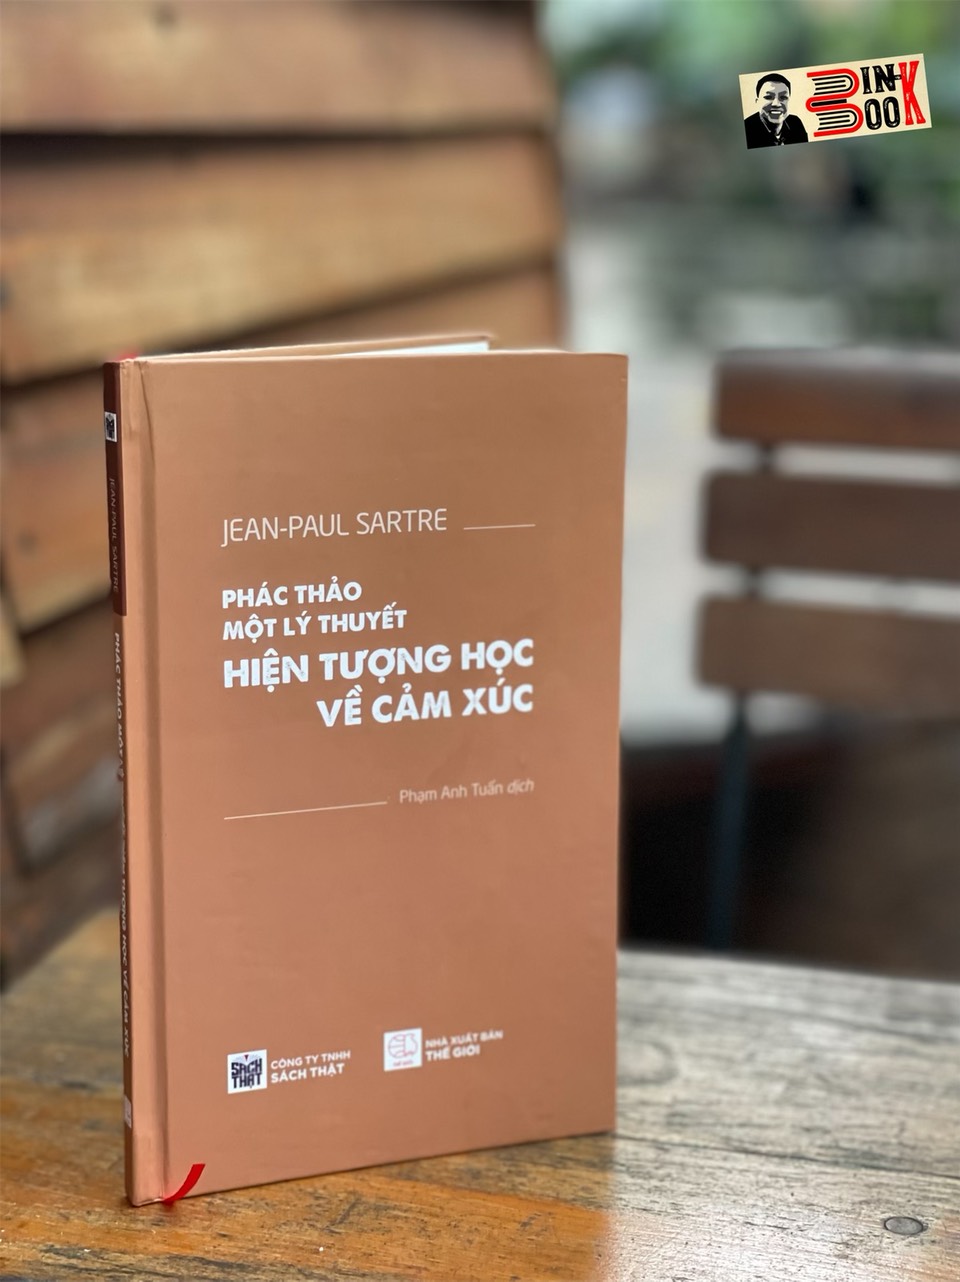 (Bìa cứng) PHÁC THẢO MỘT LÝ THUYẾT HIỆN TƯỢNG HỌC VỀ CẢM XÚC - Jean-Paul Sartre - Phạm Anh Tuấn dịch - Sách Thật – Nxb Thế Giới